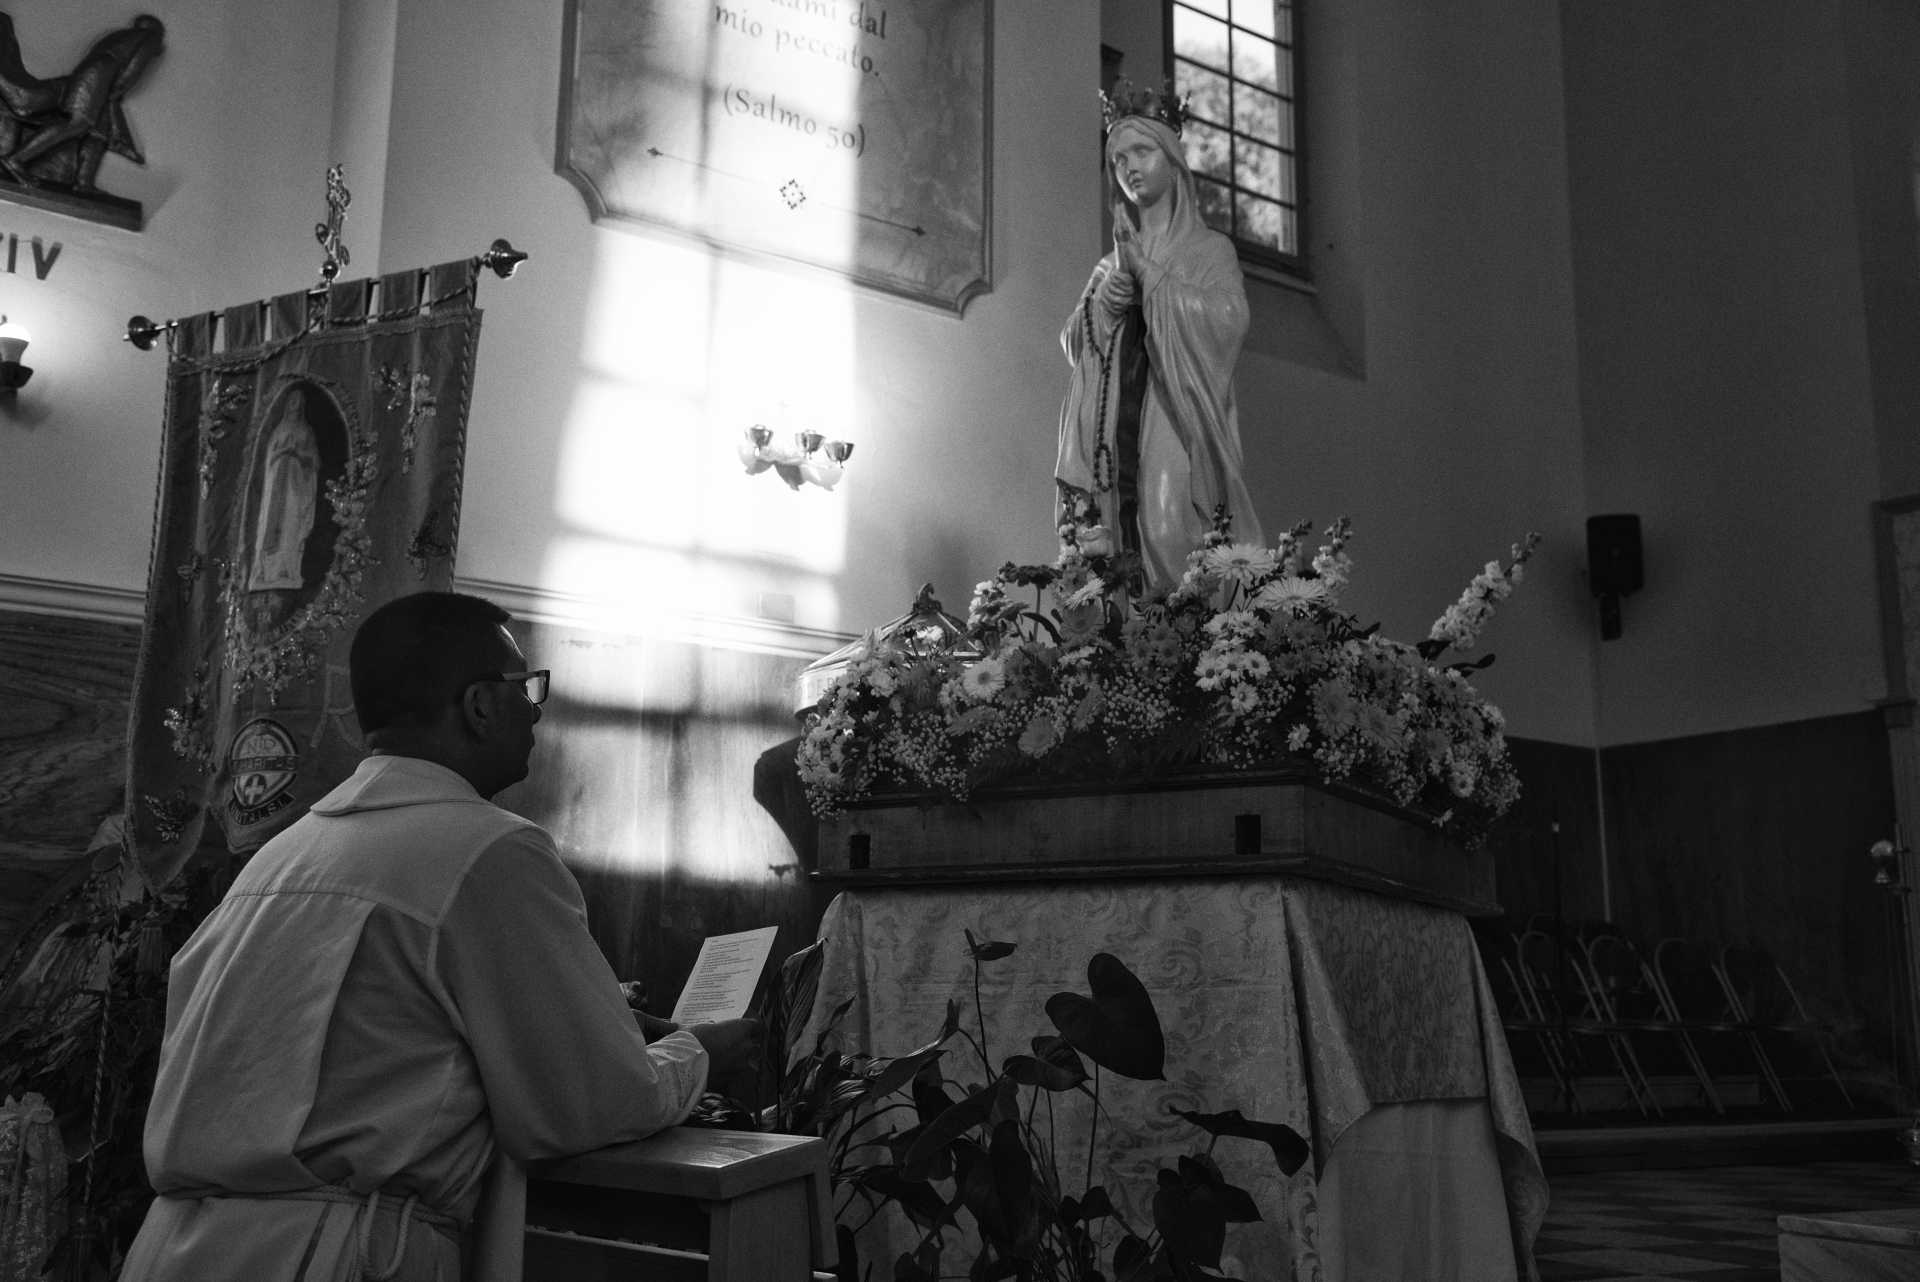 Arrivata la Madonna pellegrina di Lourdes alla Parrocchia di San Nicola